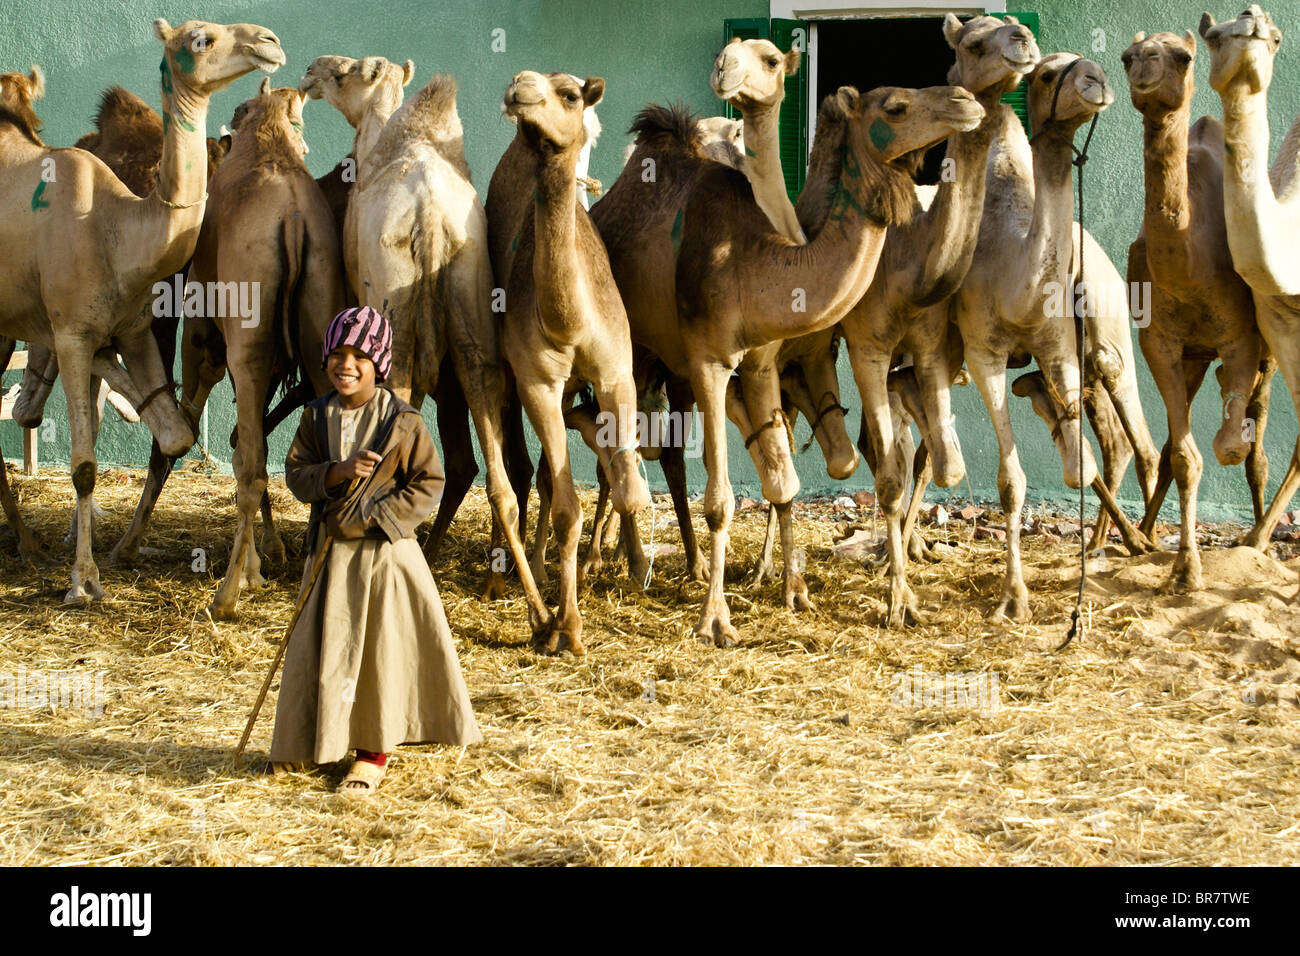 Boy with camels at camel market at Abu Rawash (Birqash), Cairo, Egypt Stock Photo